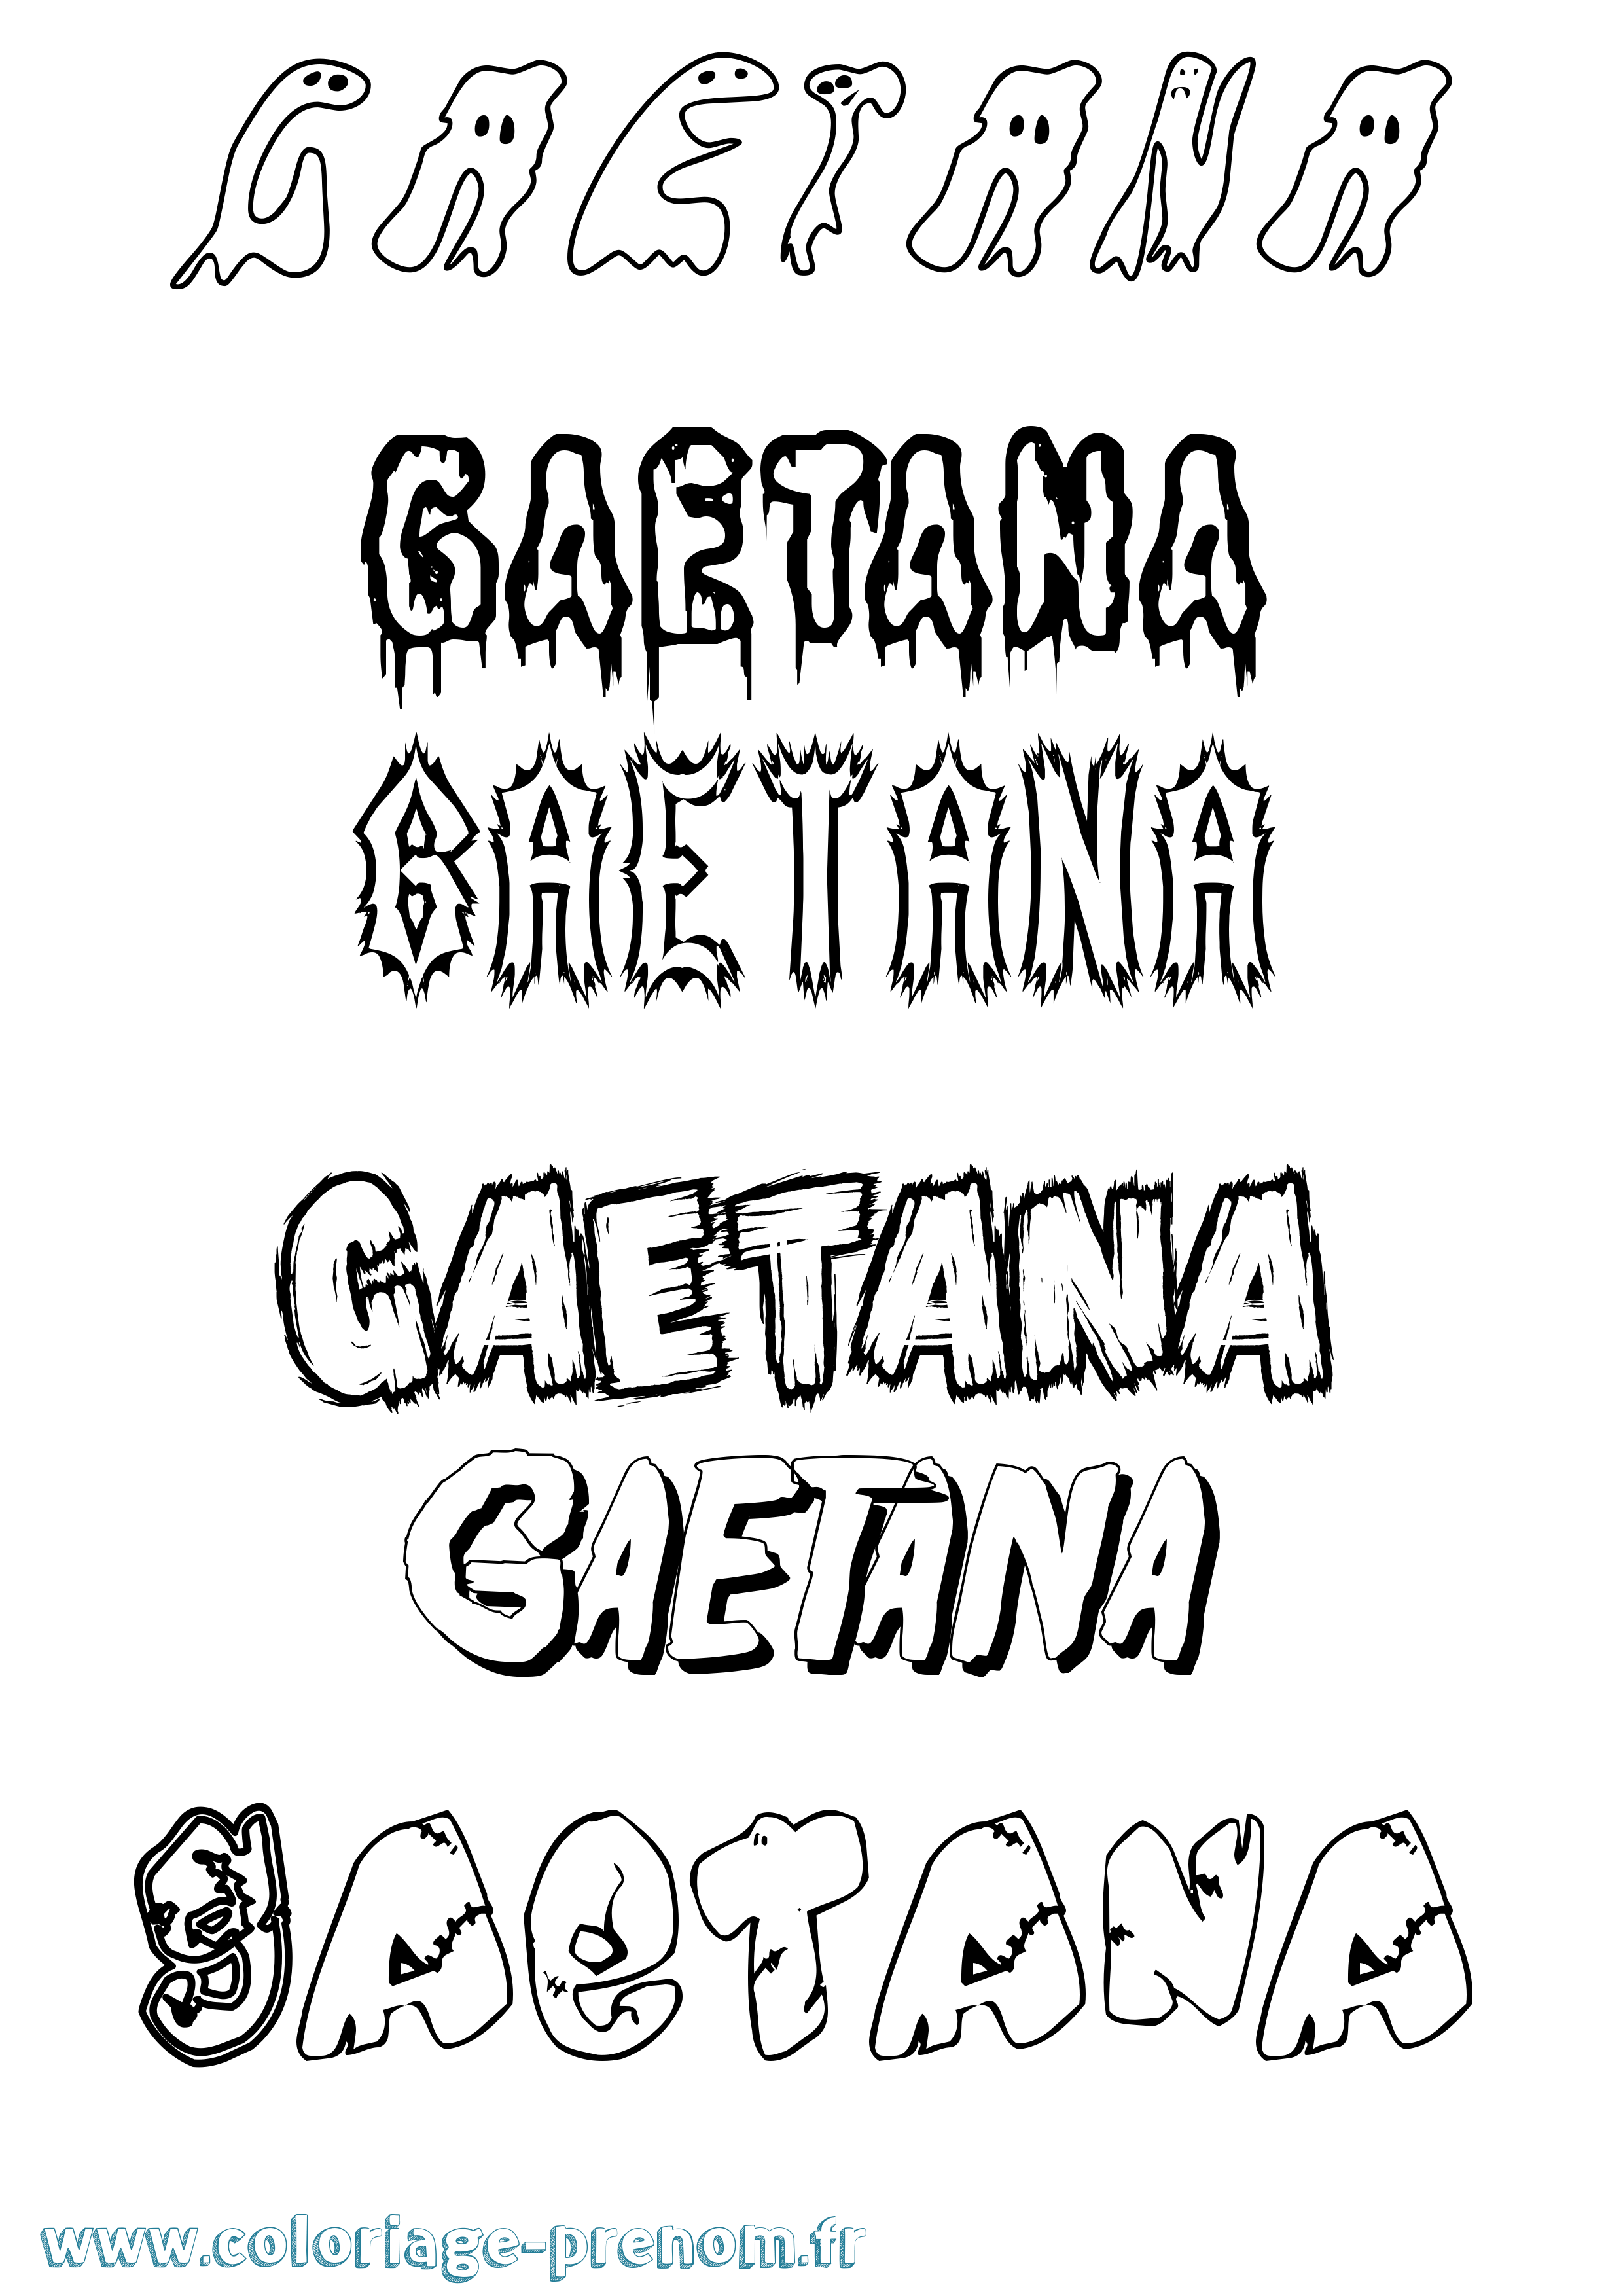 Coloriage prénom Gaetana Frisson